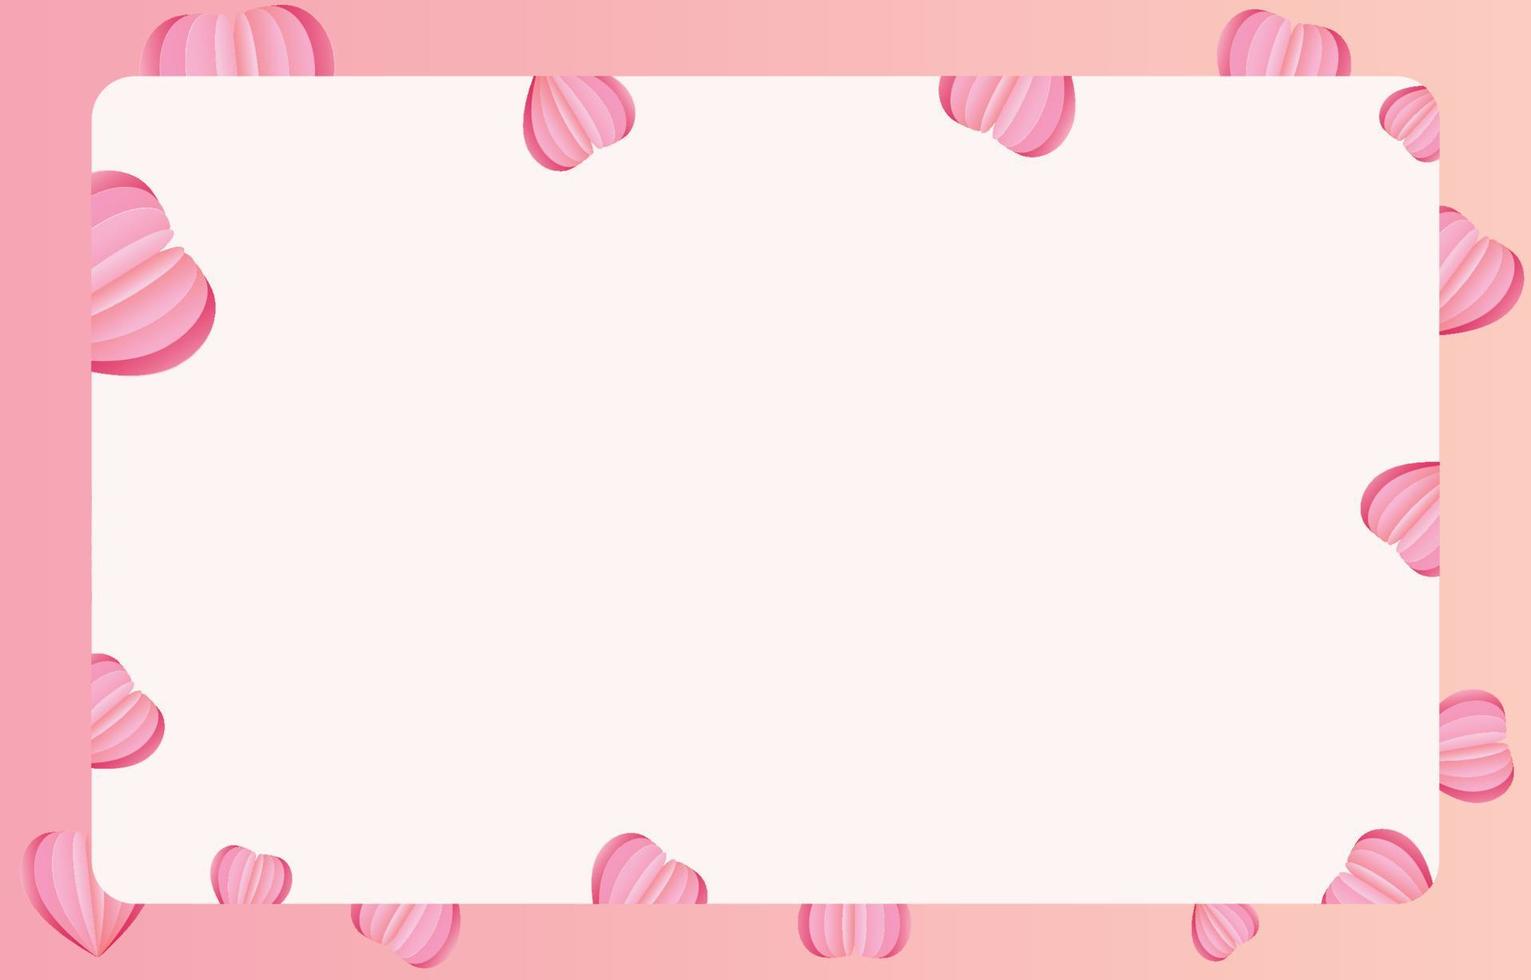 papier gesneden elementen in de vorm van een hart op rechthoekig frame heeft vrije ruimte. en roze zoete achtergrond. vectorsymbolen van liefde voor gelukkige Valentijnsdag, verjaardagswenskaartontwerp. vector